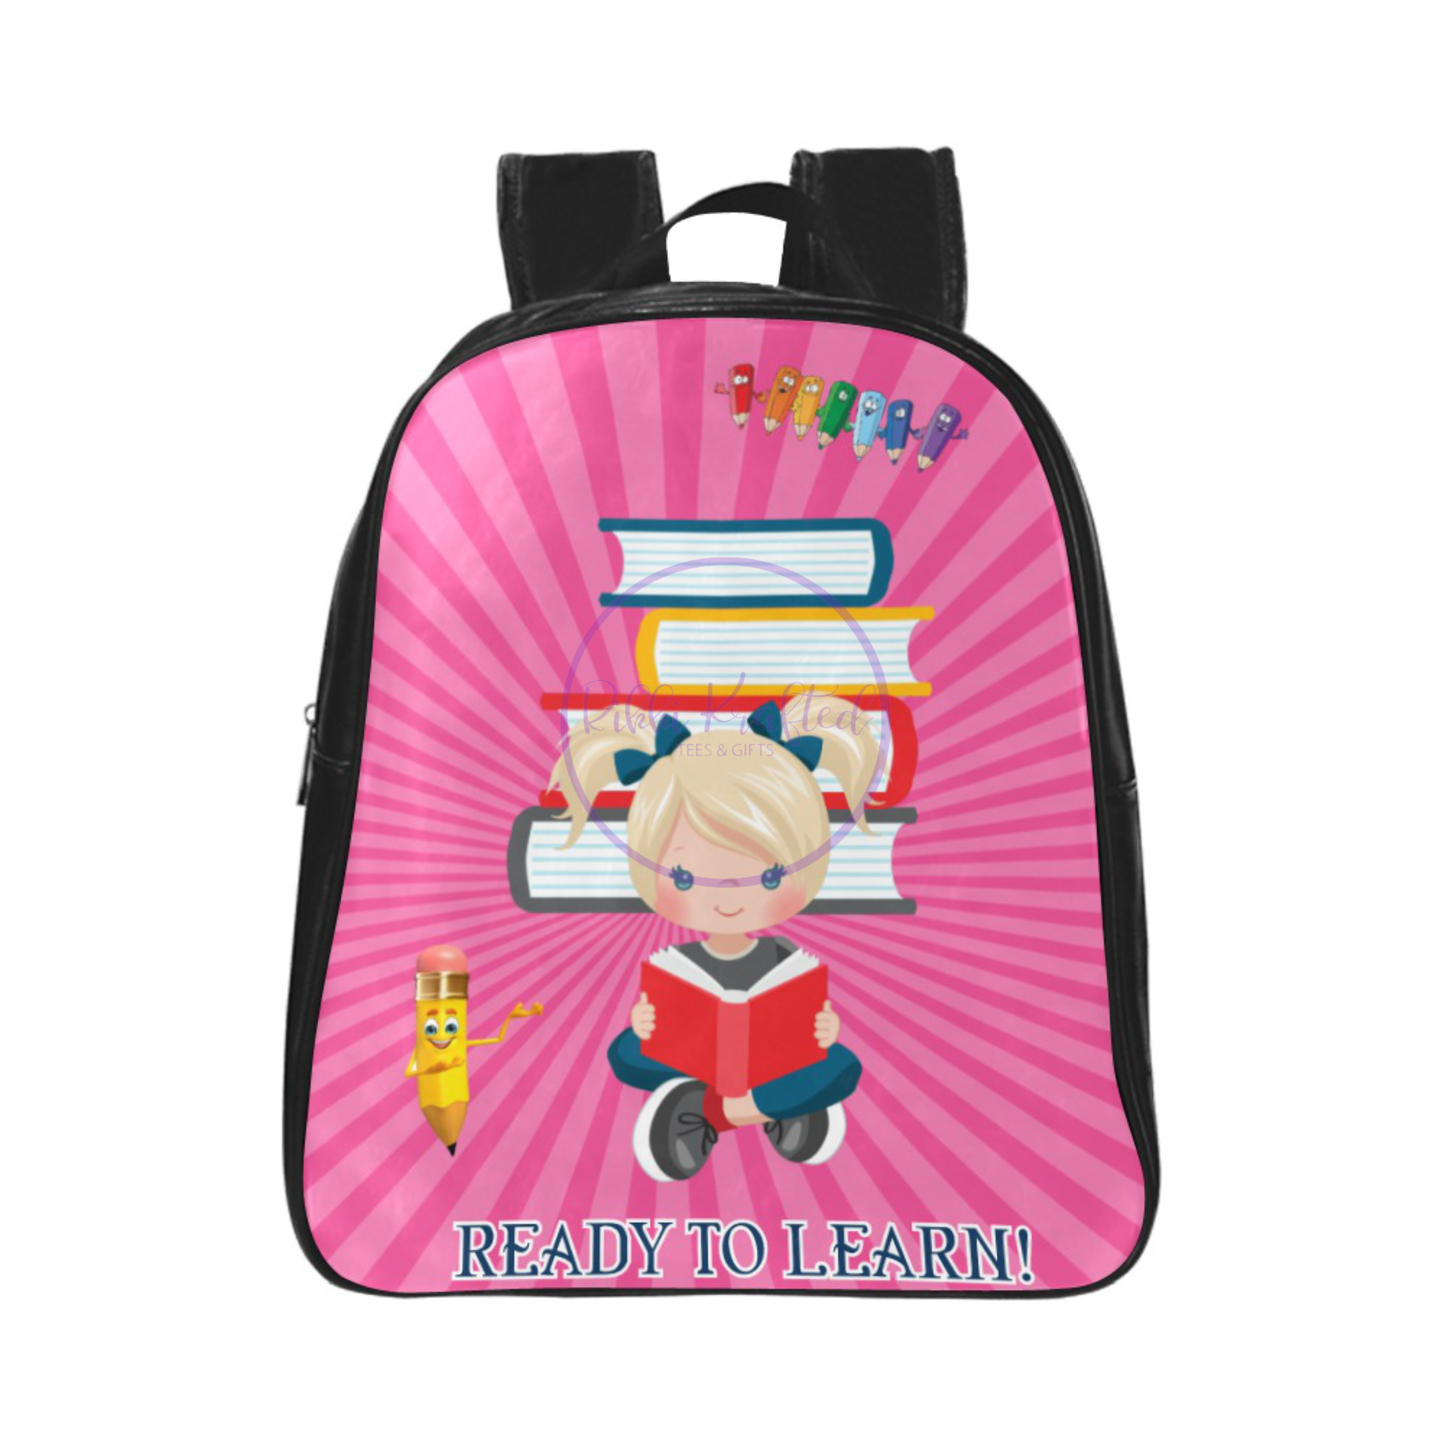 Child's Custom Backpack